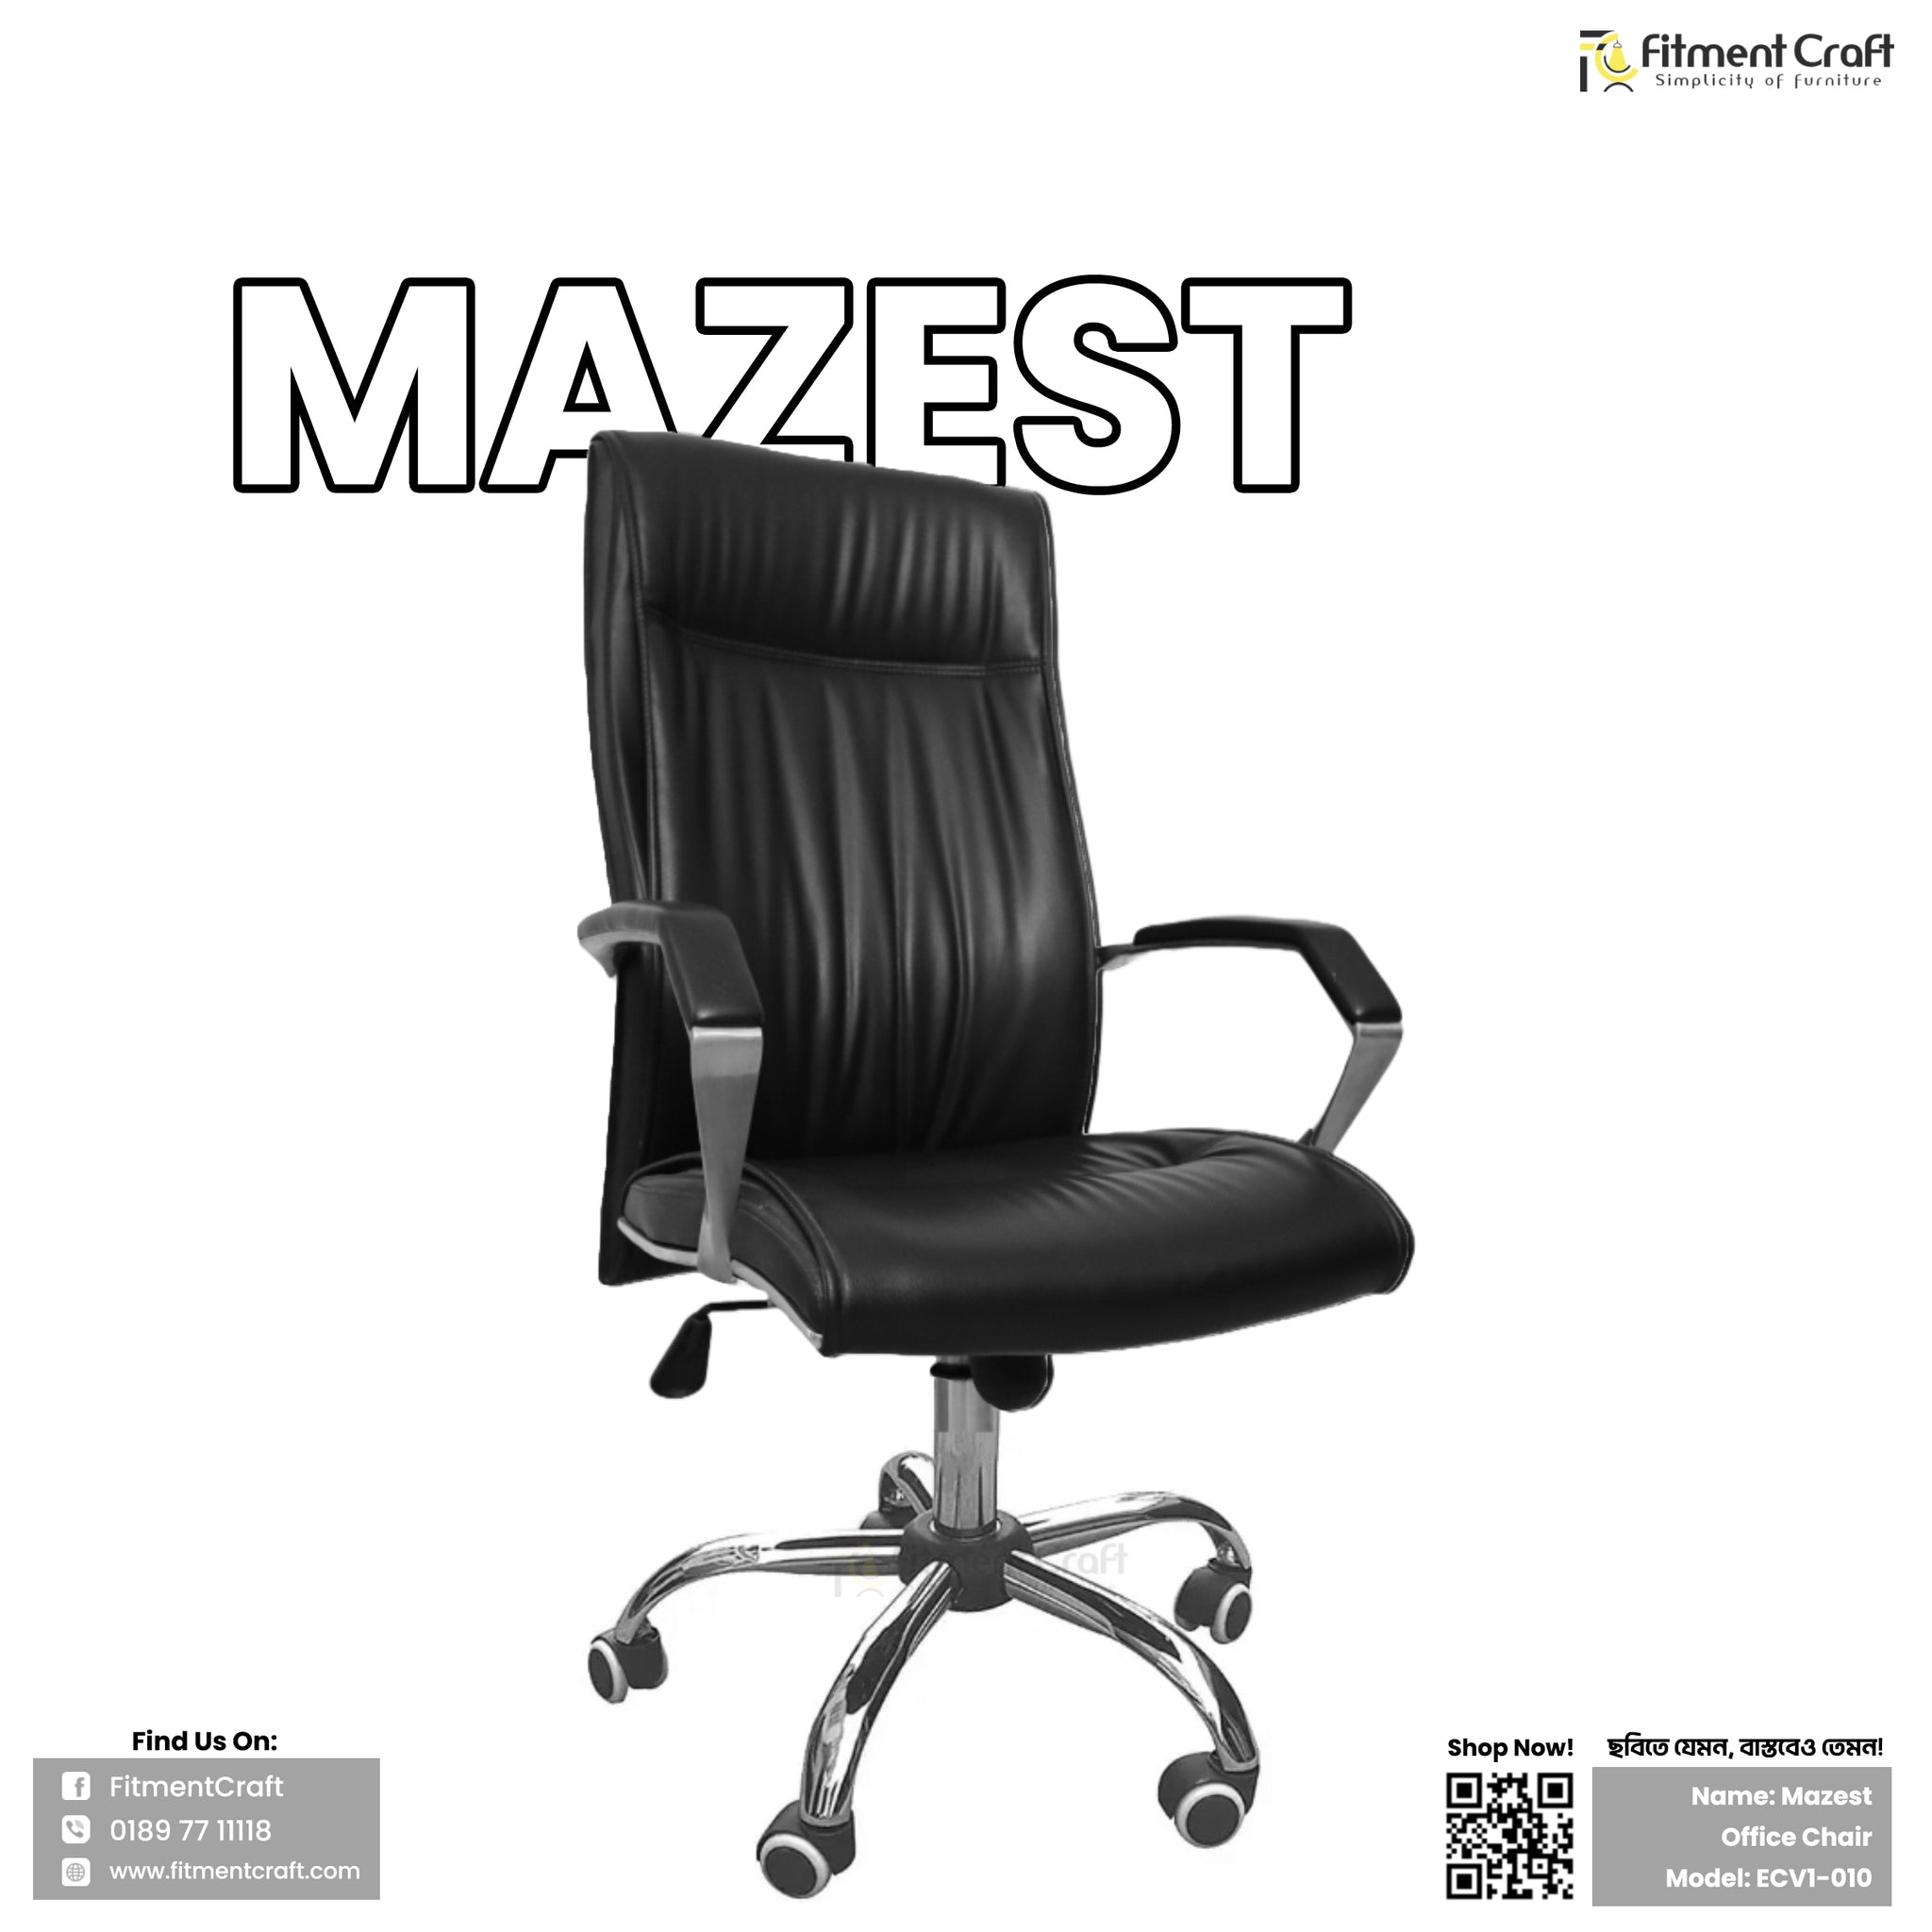 Mazest Chair